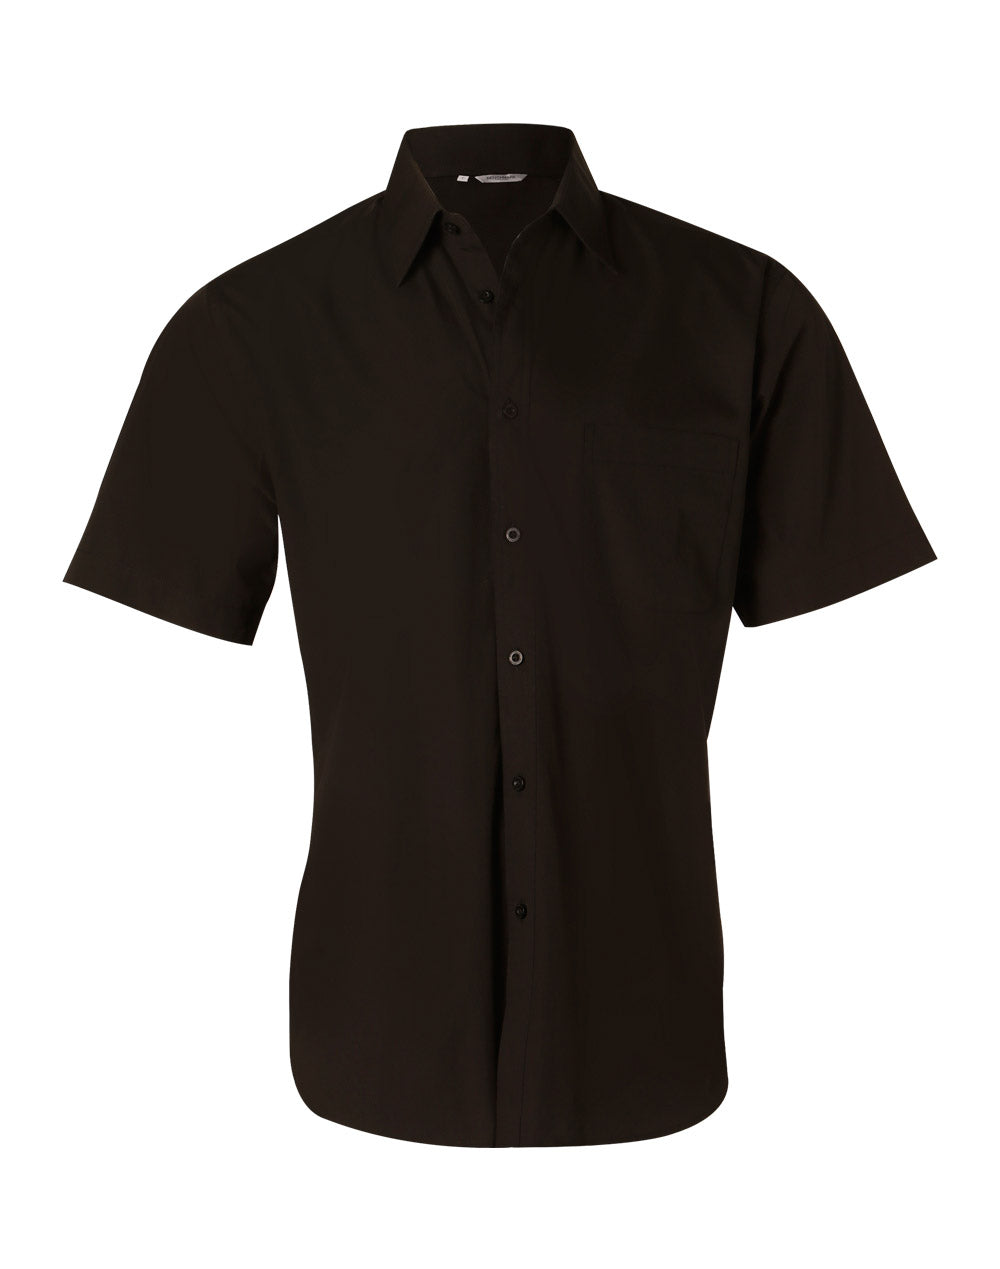 Winning Spirit -Men's Nano Tech Short Sleeve Shirt-M7001